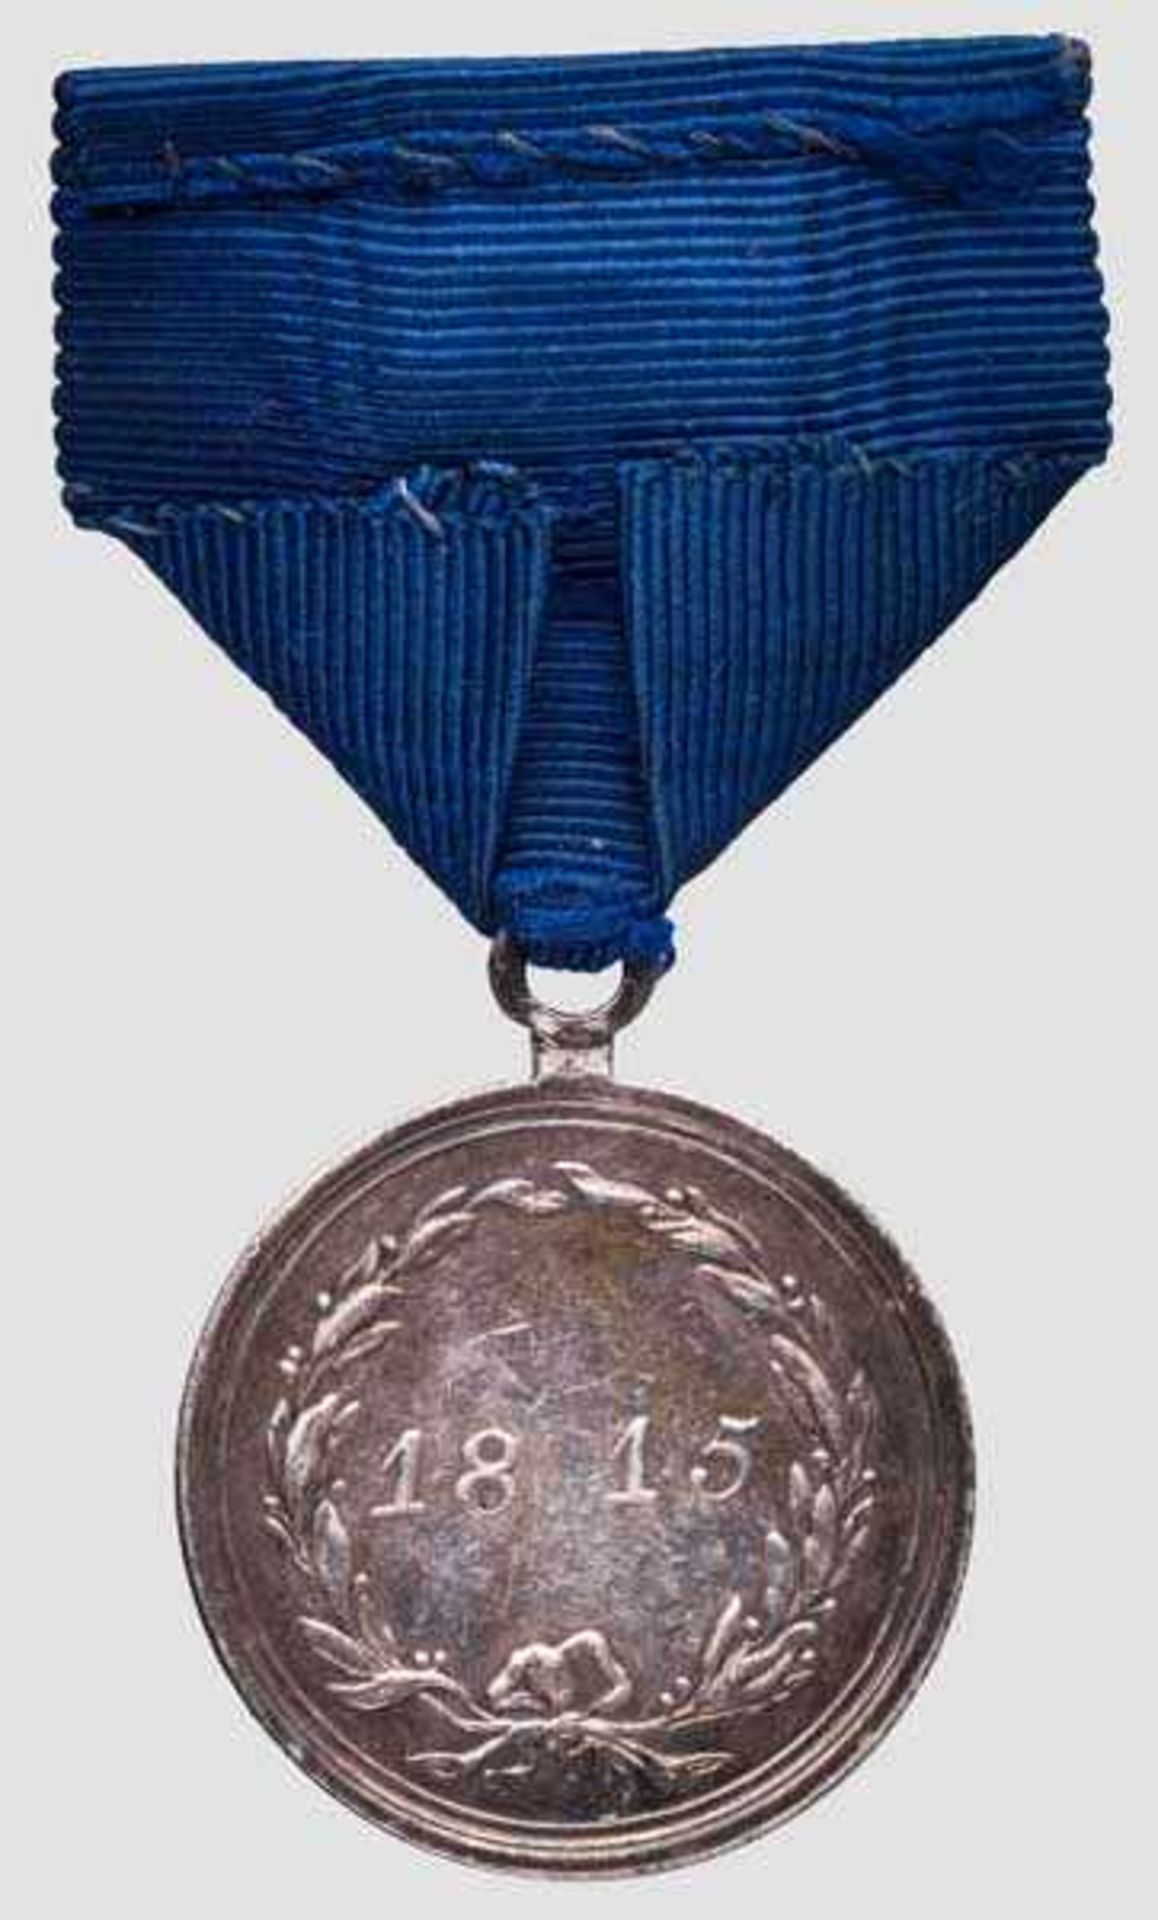 Militärverdienstmedaille für den Feldzug 1815 In Silber geprägte Medaille, mit stehender Öse am Band - Bild 2 aus 2